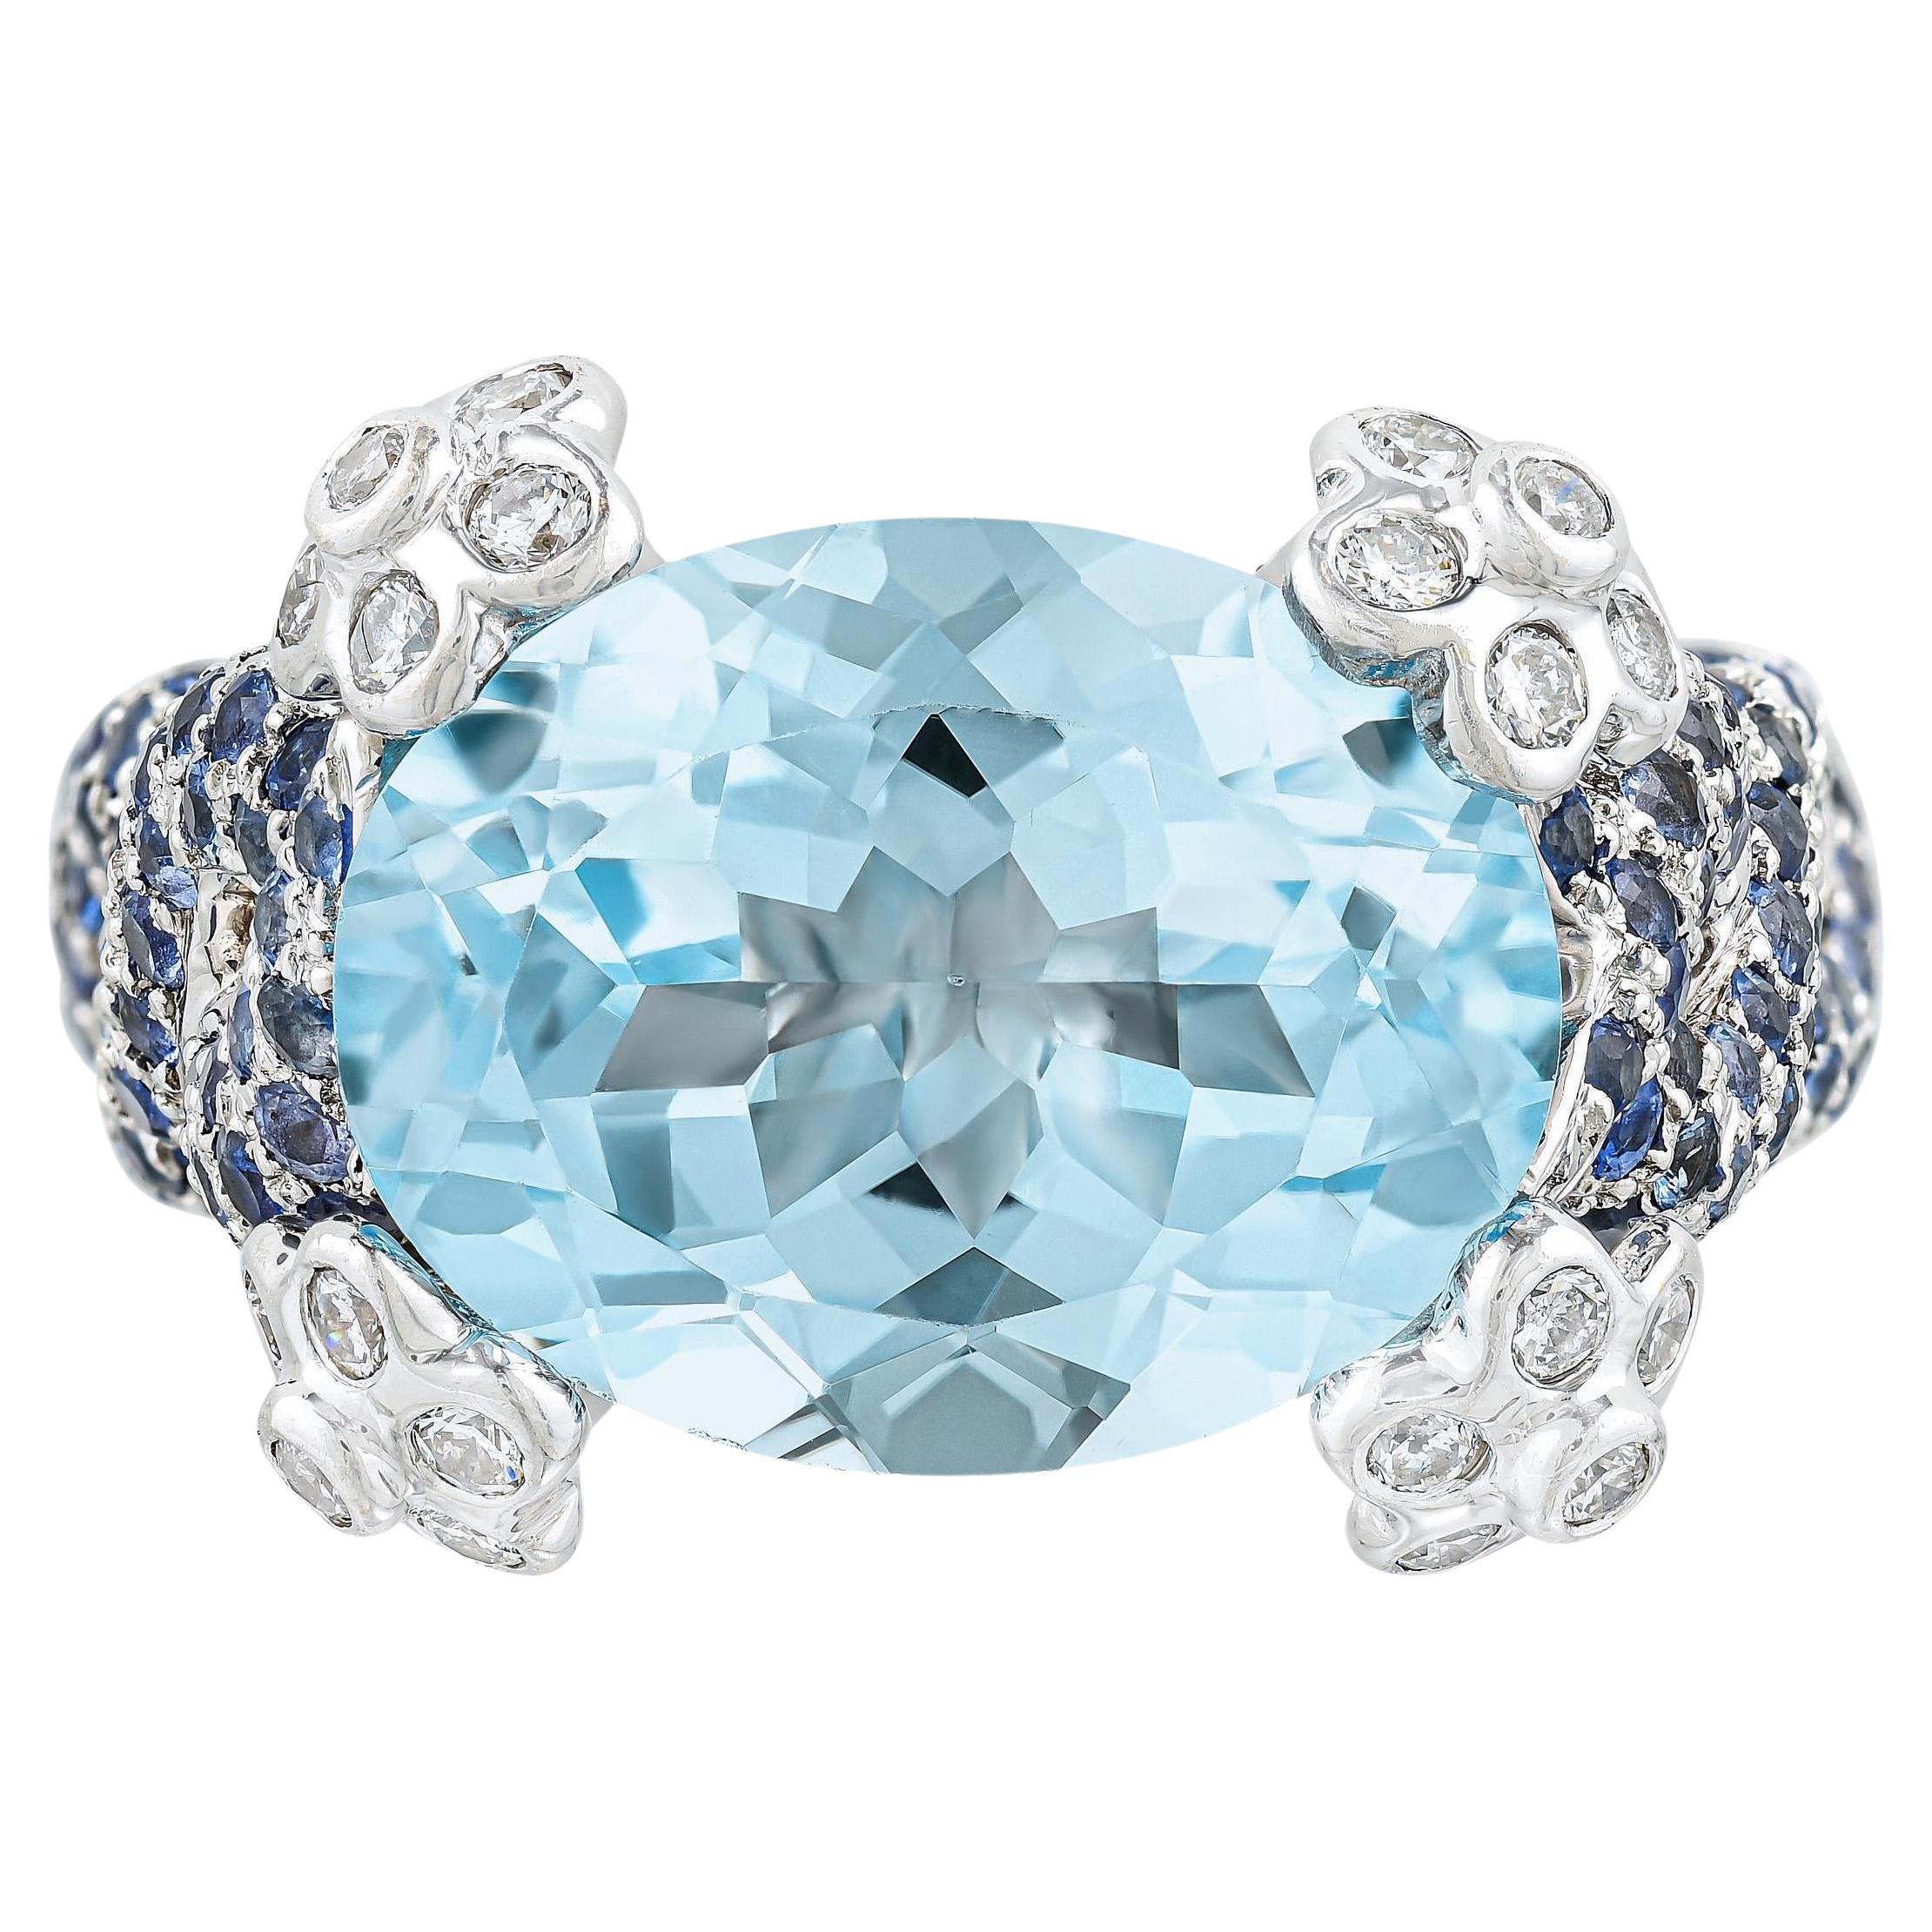 Natürlicher ovaler Aquamarin Ring mit blauen Saphiren und Diamanten 7,79 Karat 18K